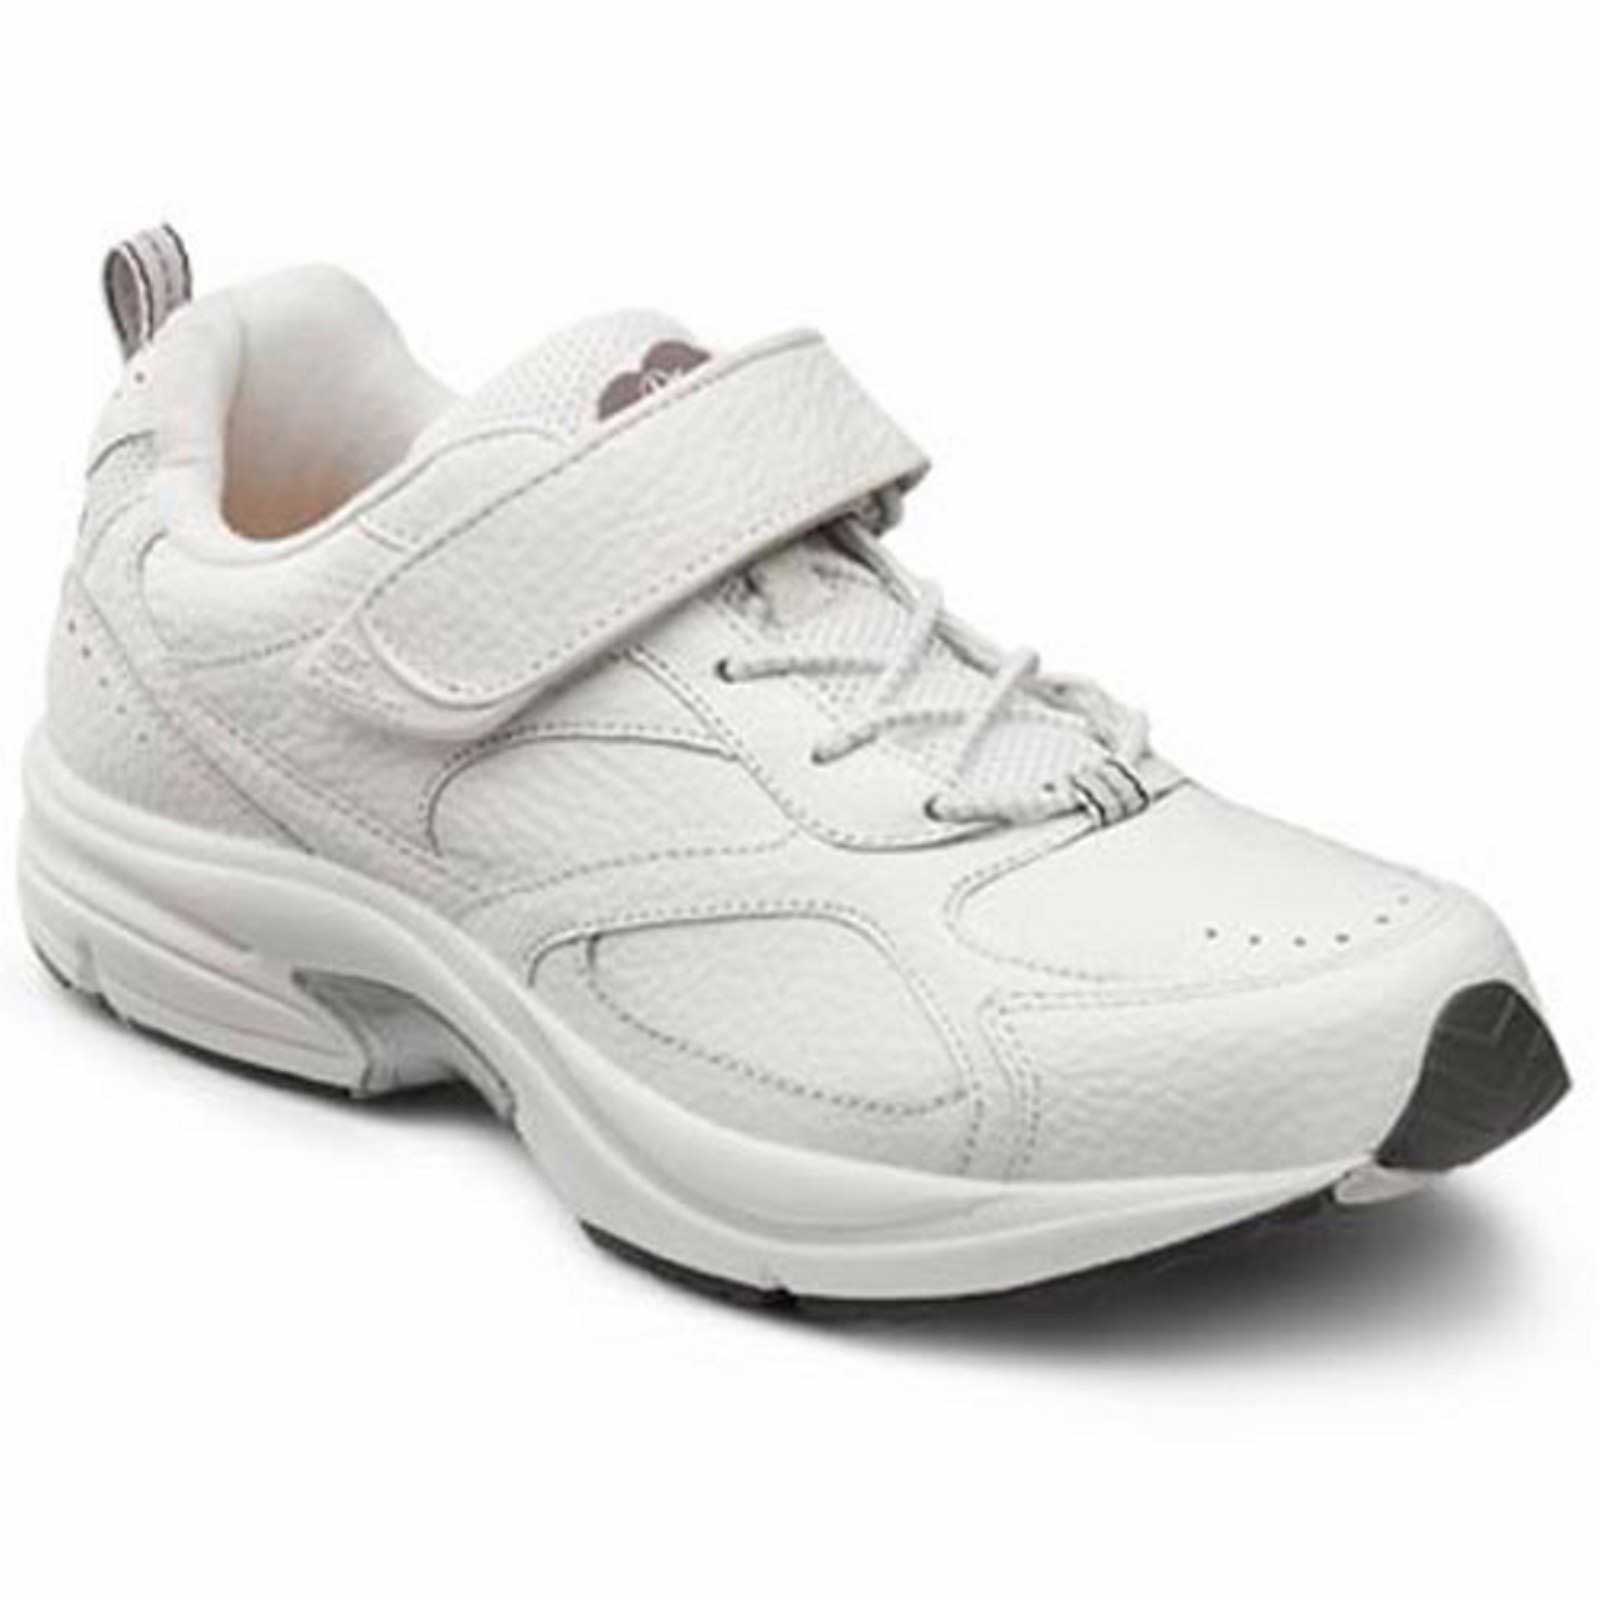 dr comfort men's shoes